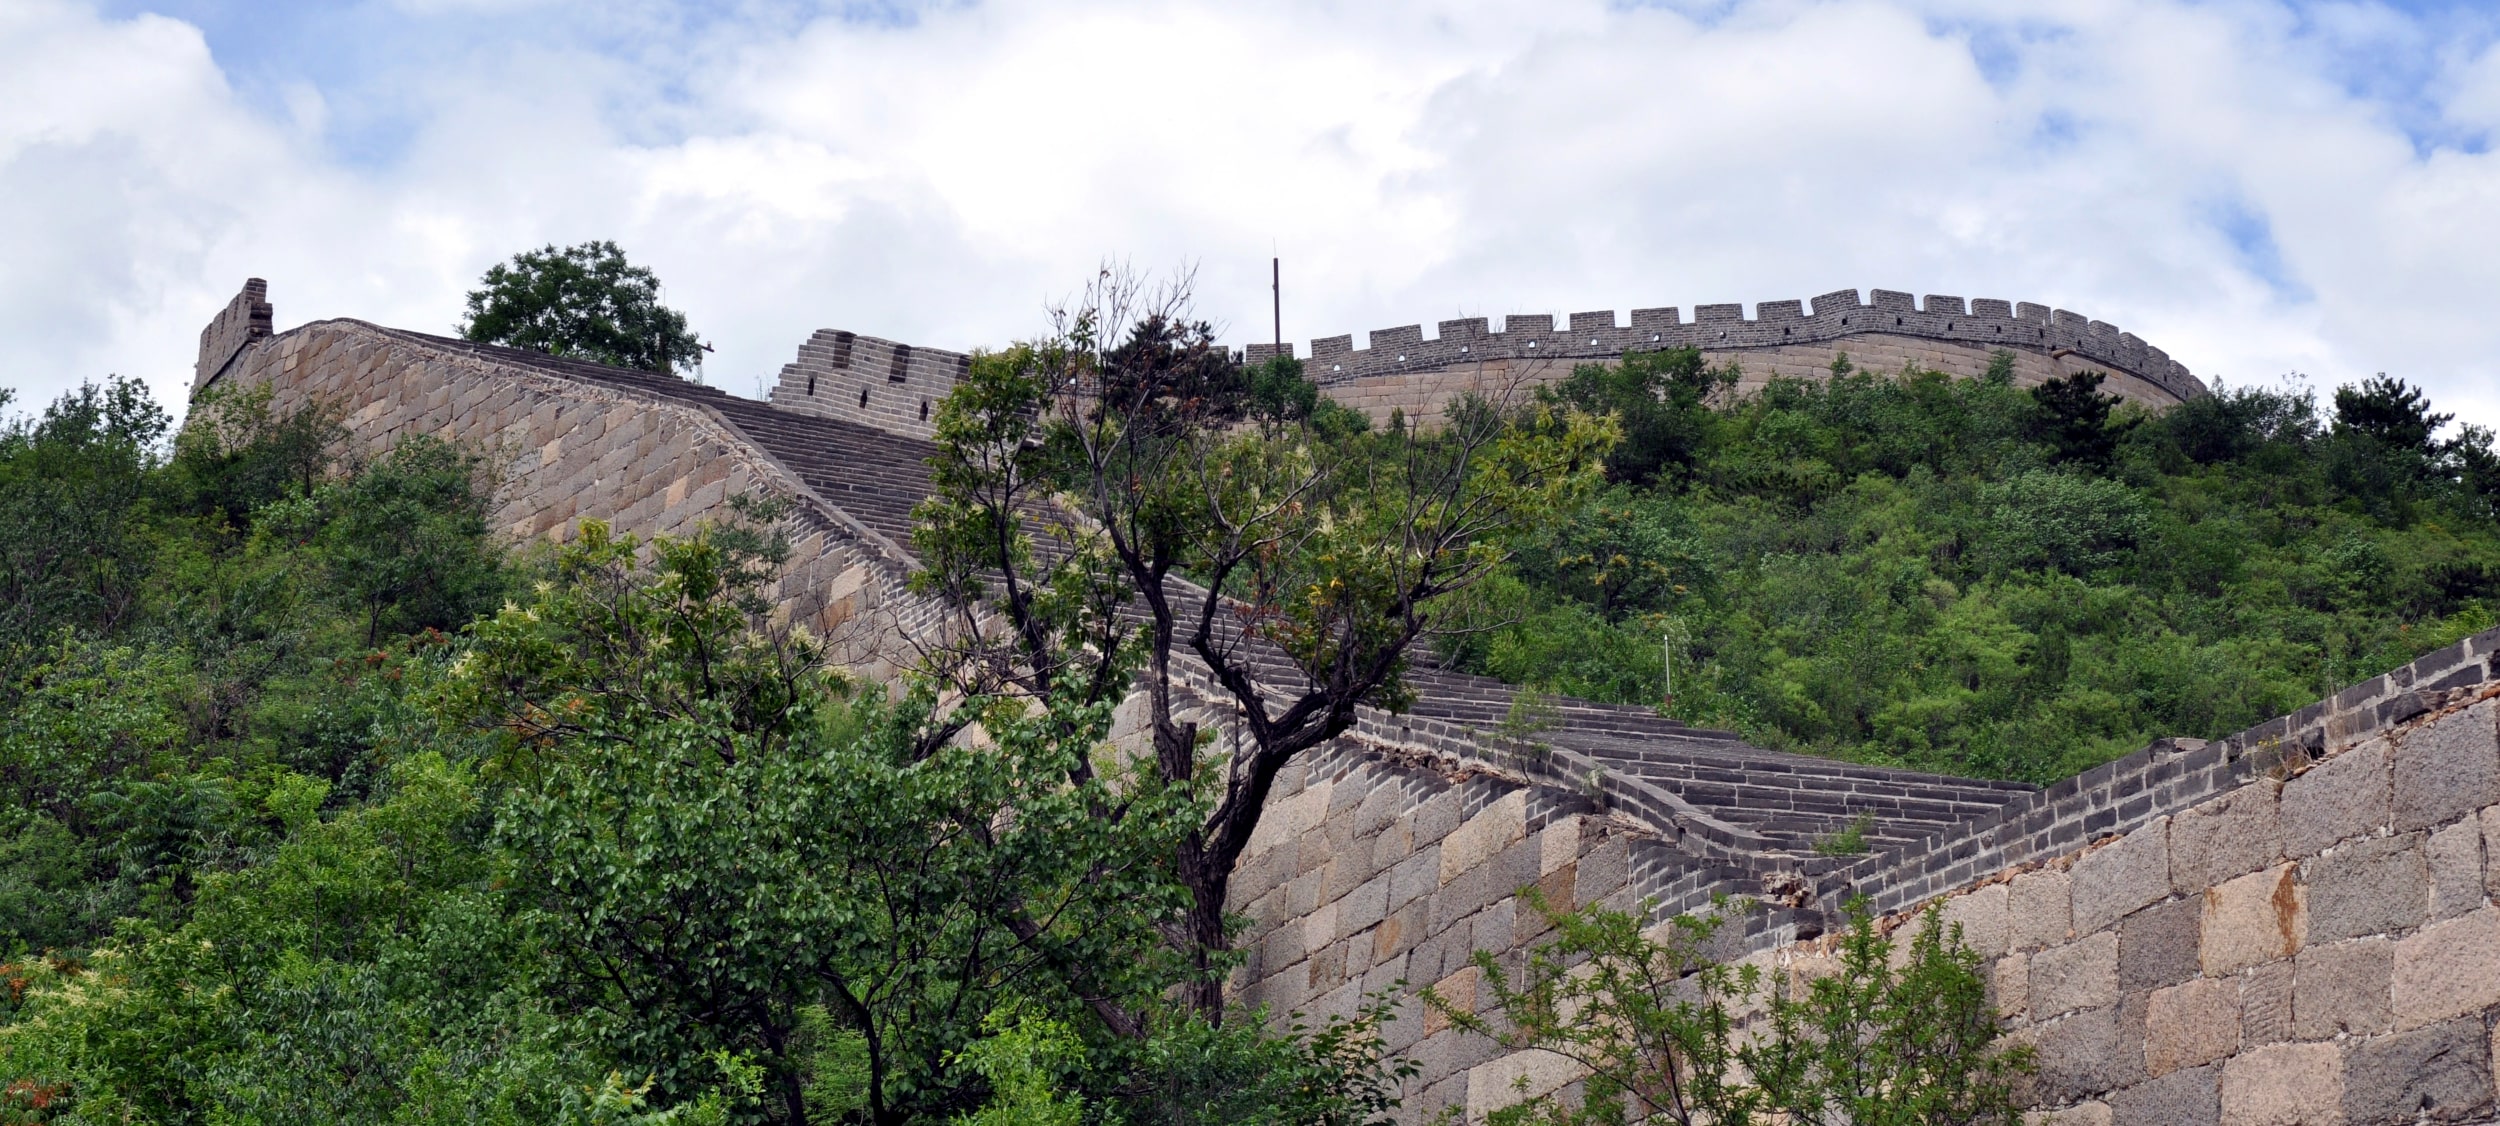 Seccion de la flor amarilla de la Gran Muralla de China en el distrito de Huairo al norte de Beijing, Pekin capital de China. Haremos una caminata aqui despues de montar en bici alrededor de la gran muralla